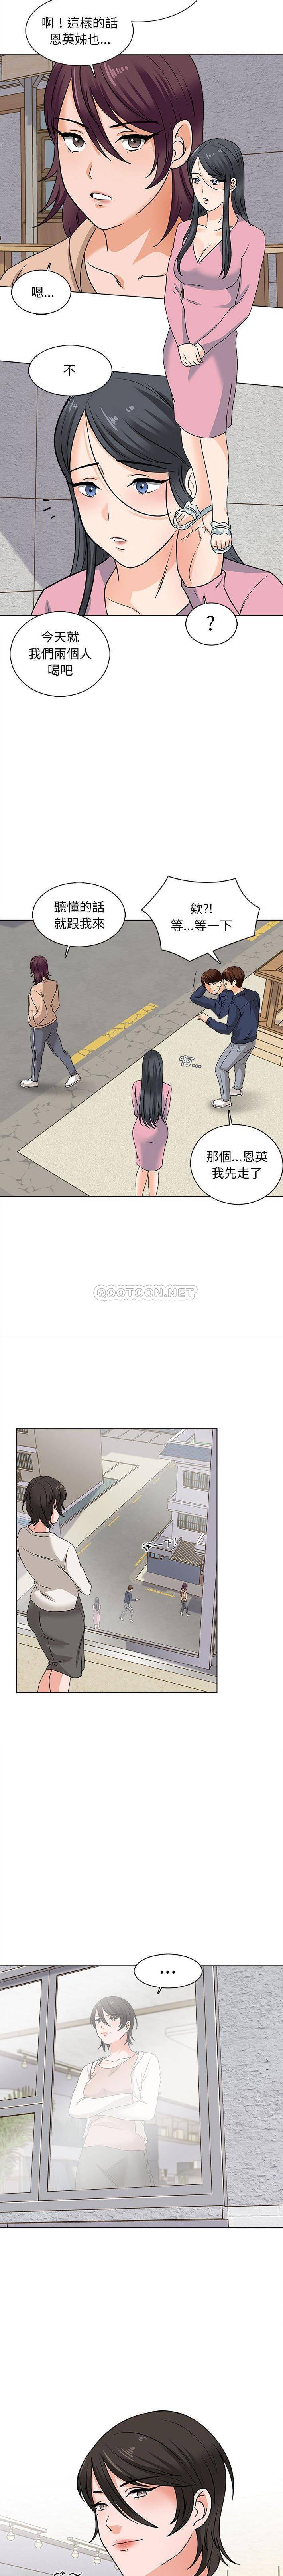 韩国污漫画 幸福公寓 第15话 13